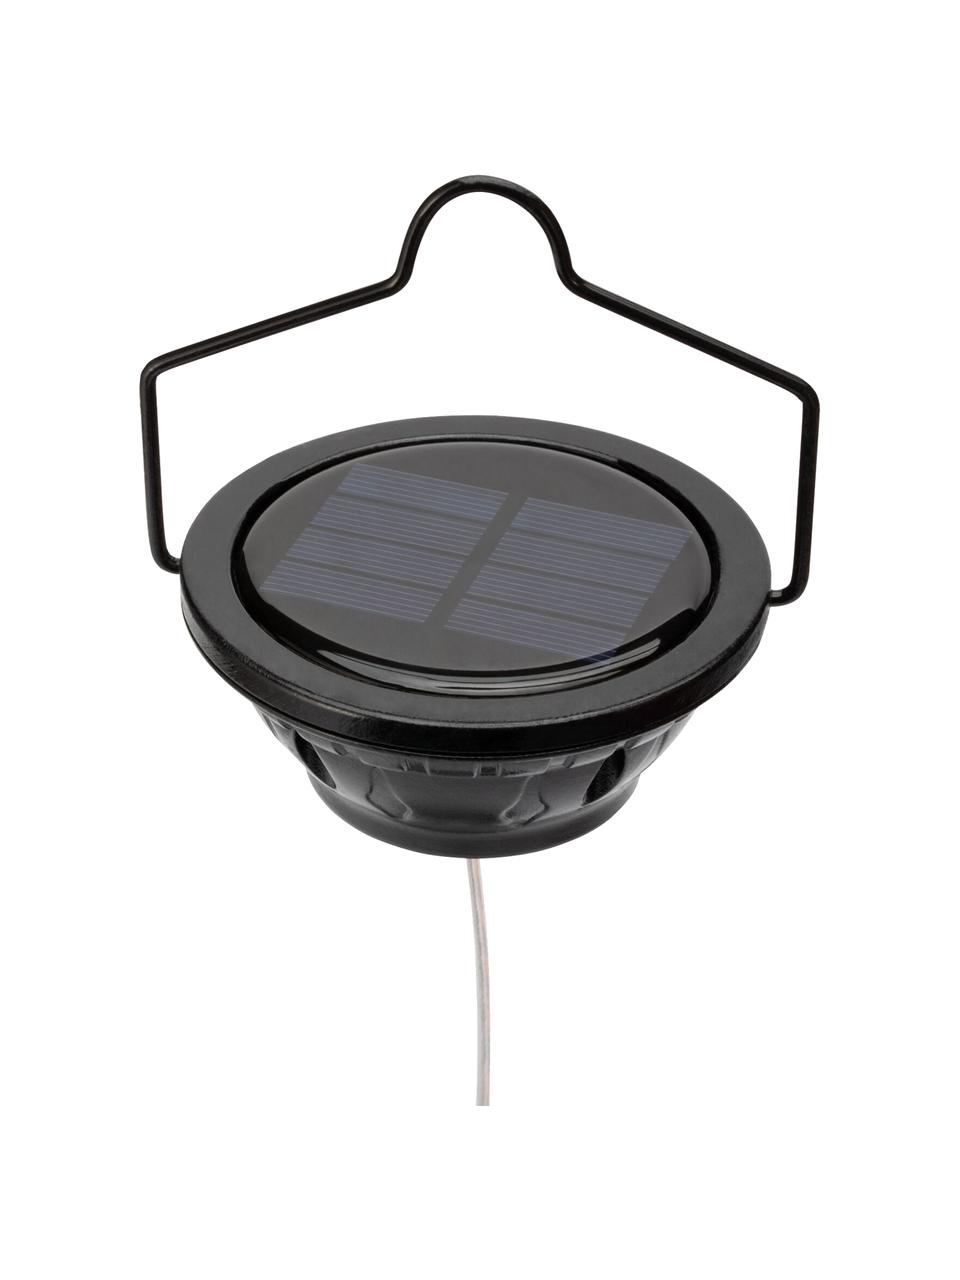 Solar hanglamp Sunshine Magic, Lampenkap: metaal, Baldakijn: kunststof, Zwart, Ø 15 x H 44 cm